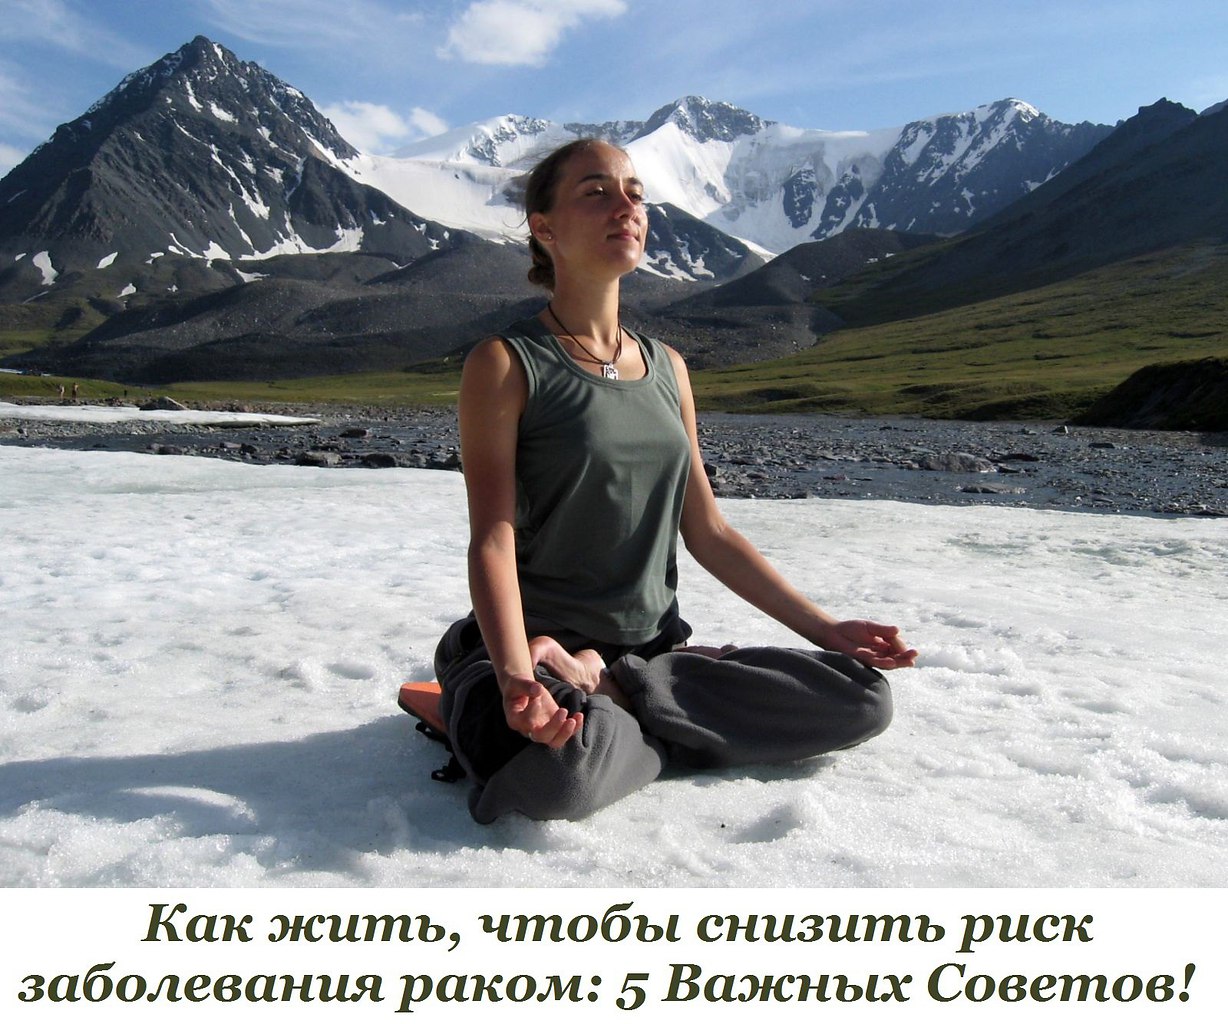 Медитация от всех болезней. Медитация в зимних горах. Медитация в горах. Медитация на снегу. Медитация зимой.